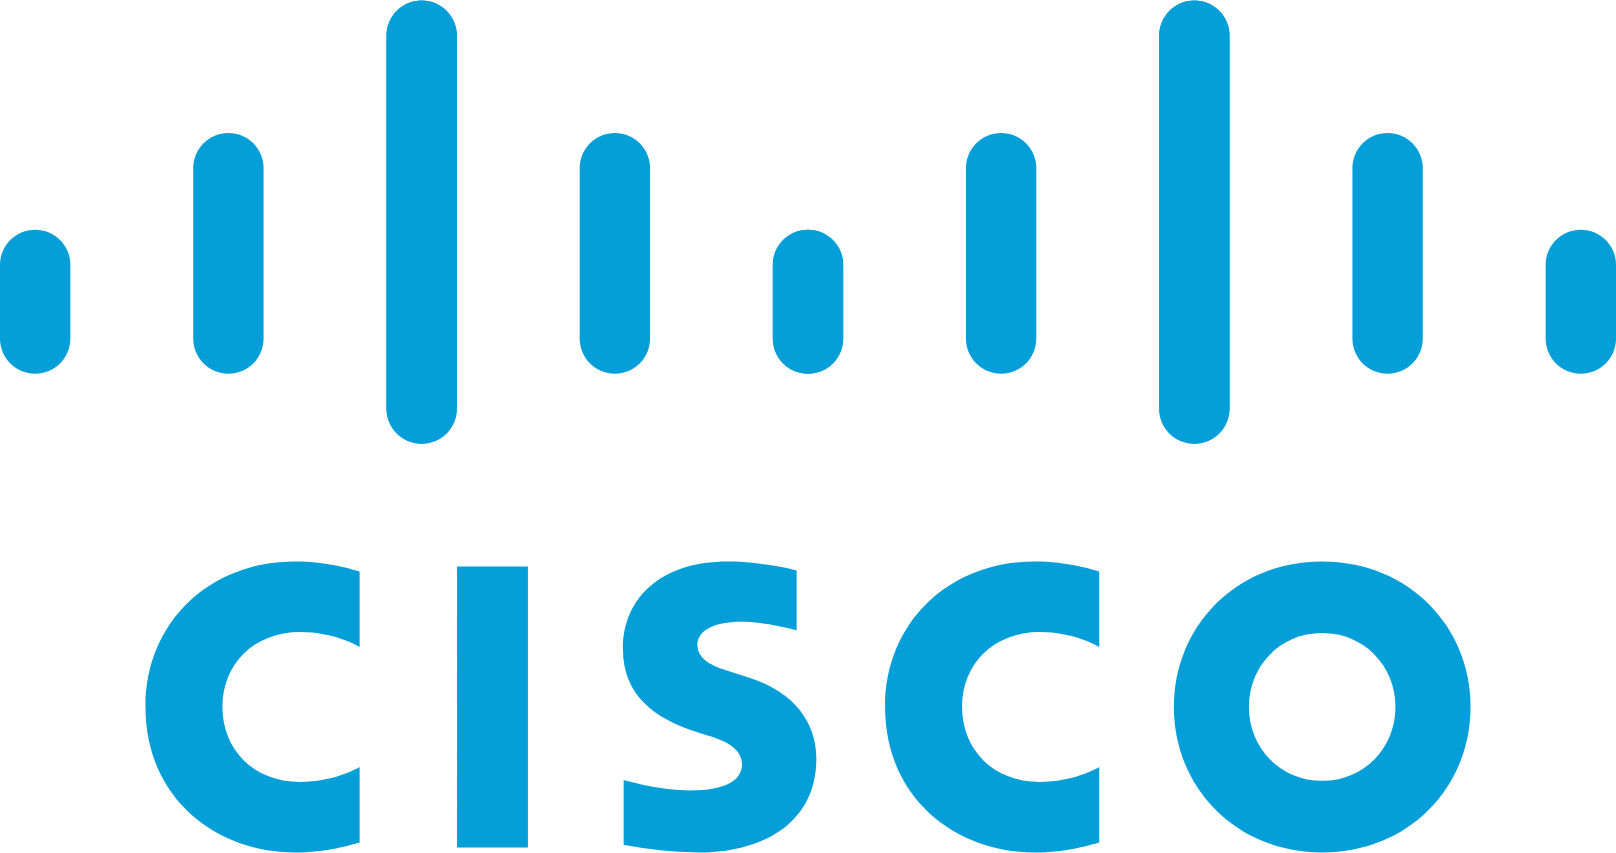 Cisco logo (PNG transparent)